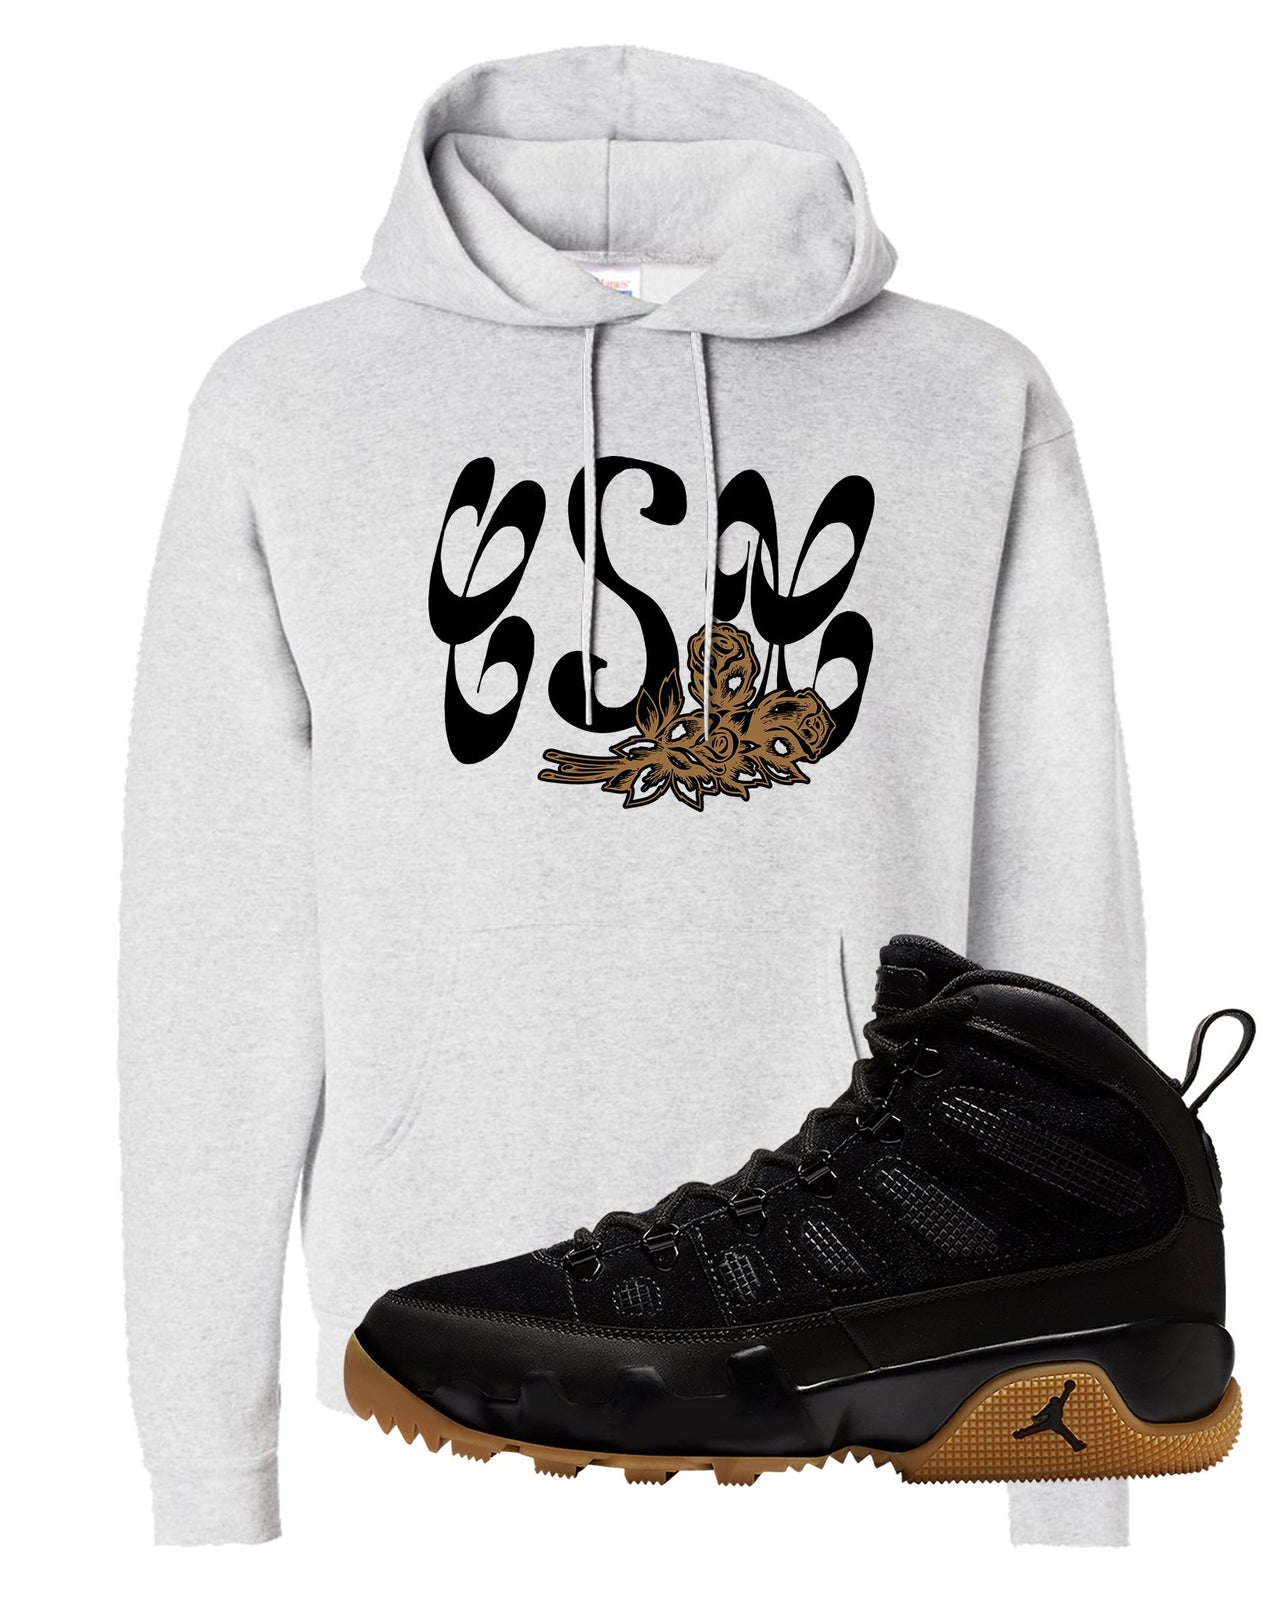 NRG Black Gum Boot 9s Hoodie | Certified Sneakerhead, Ash